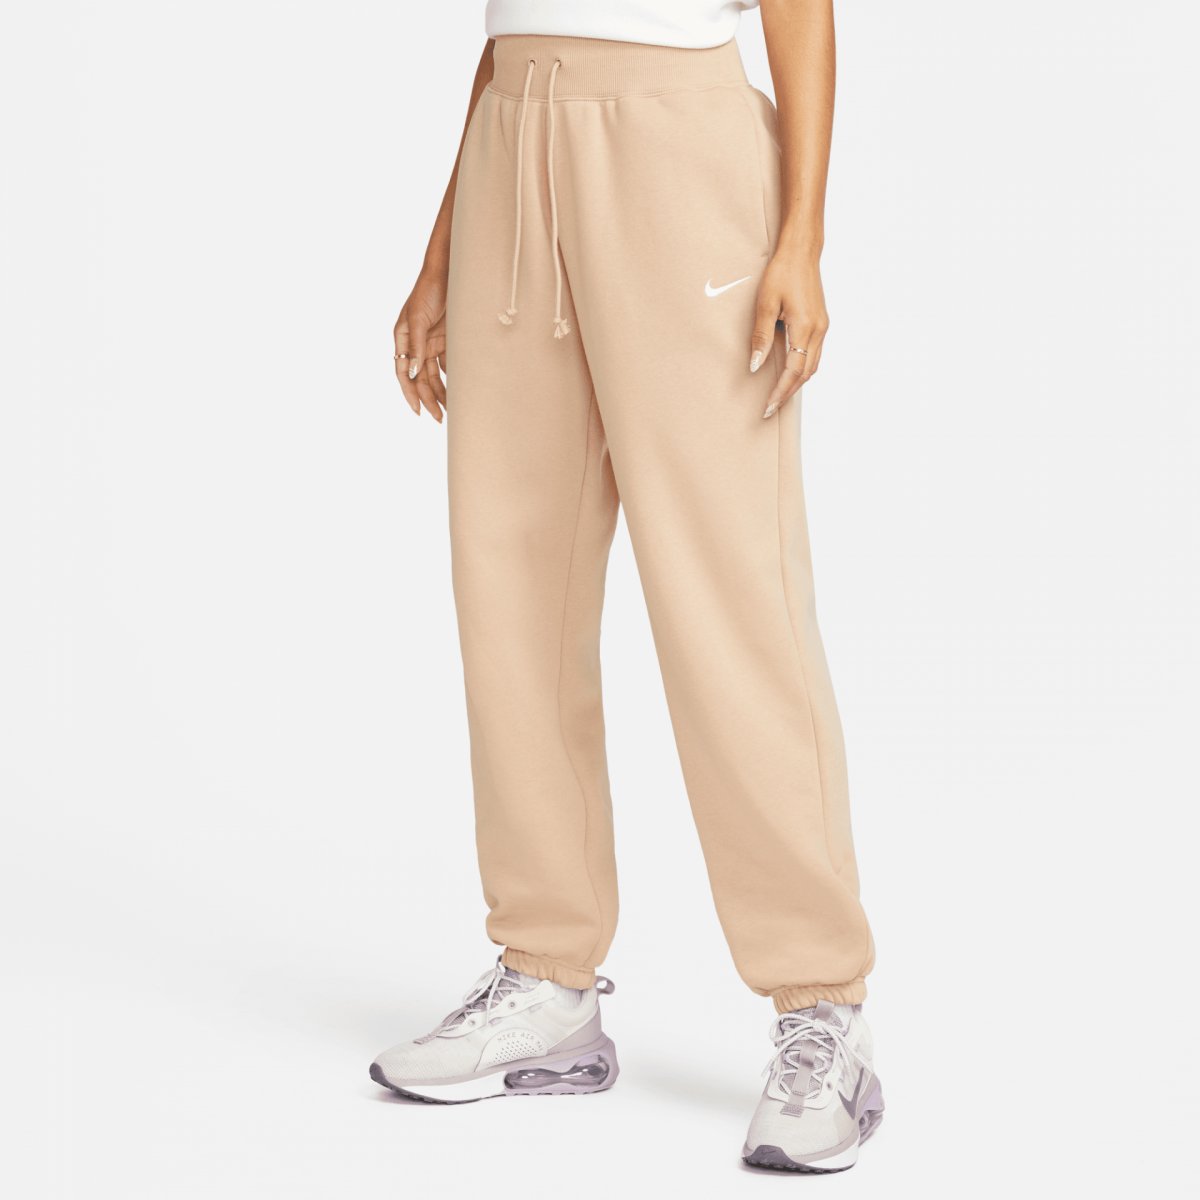 Nike Sportswear Phoenix Fleece Beige Women's lifestyle pants - Pants ...